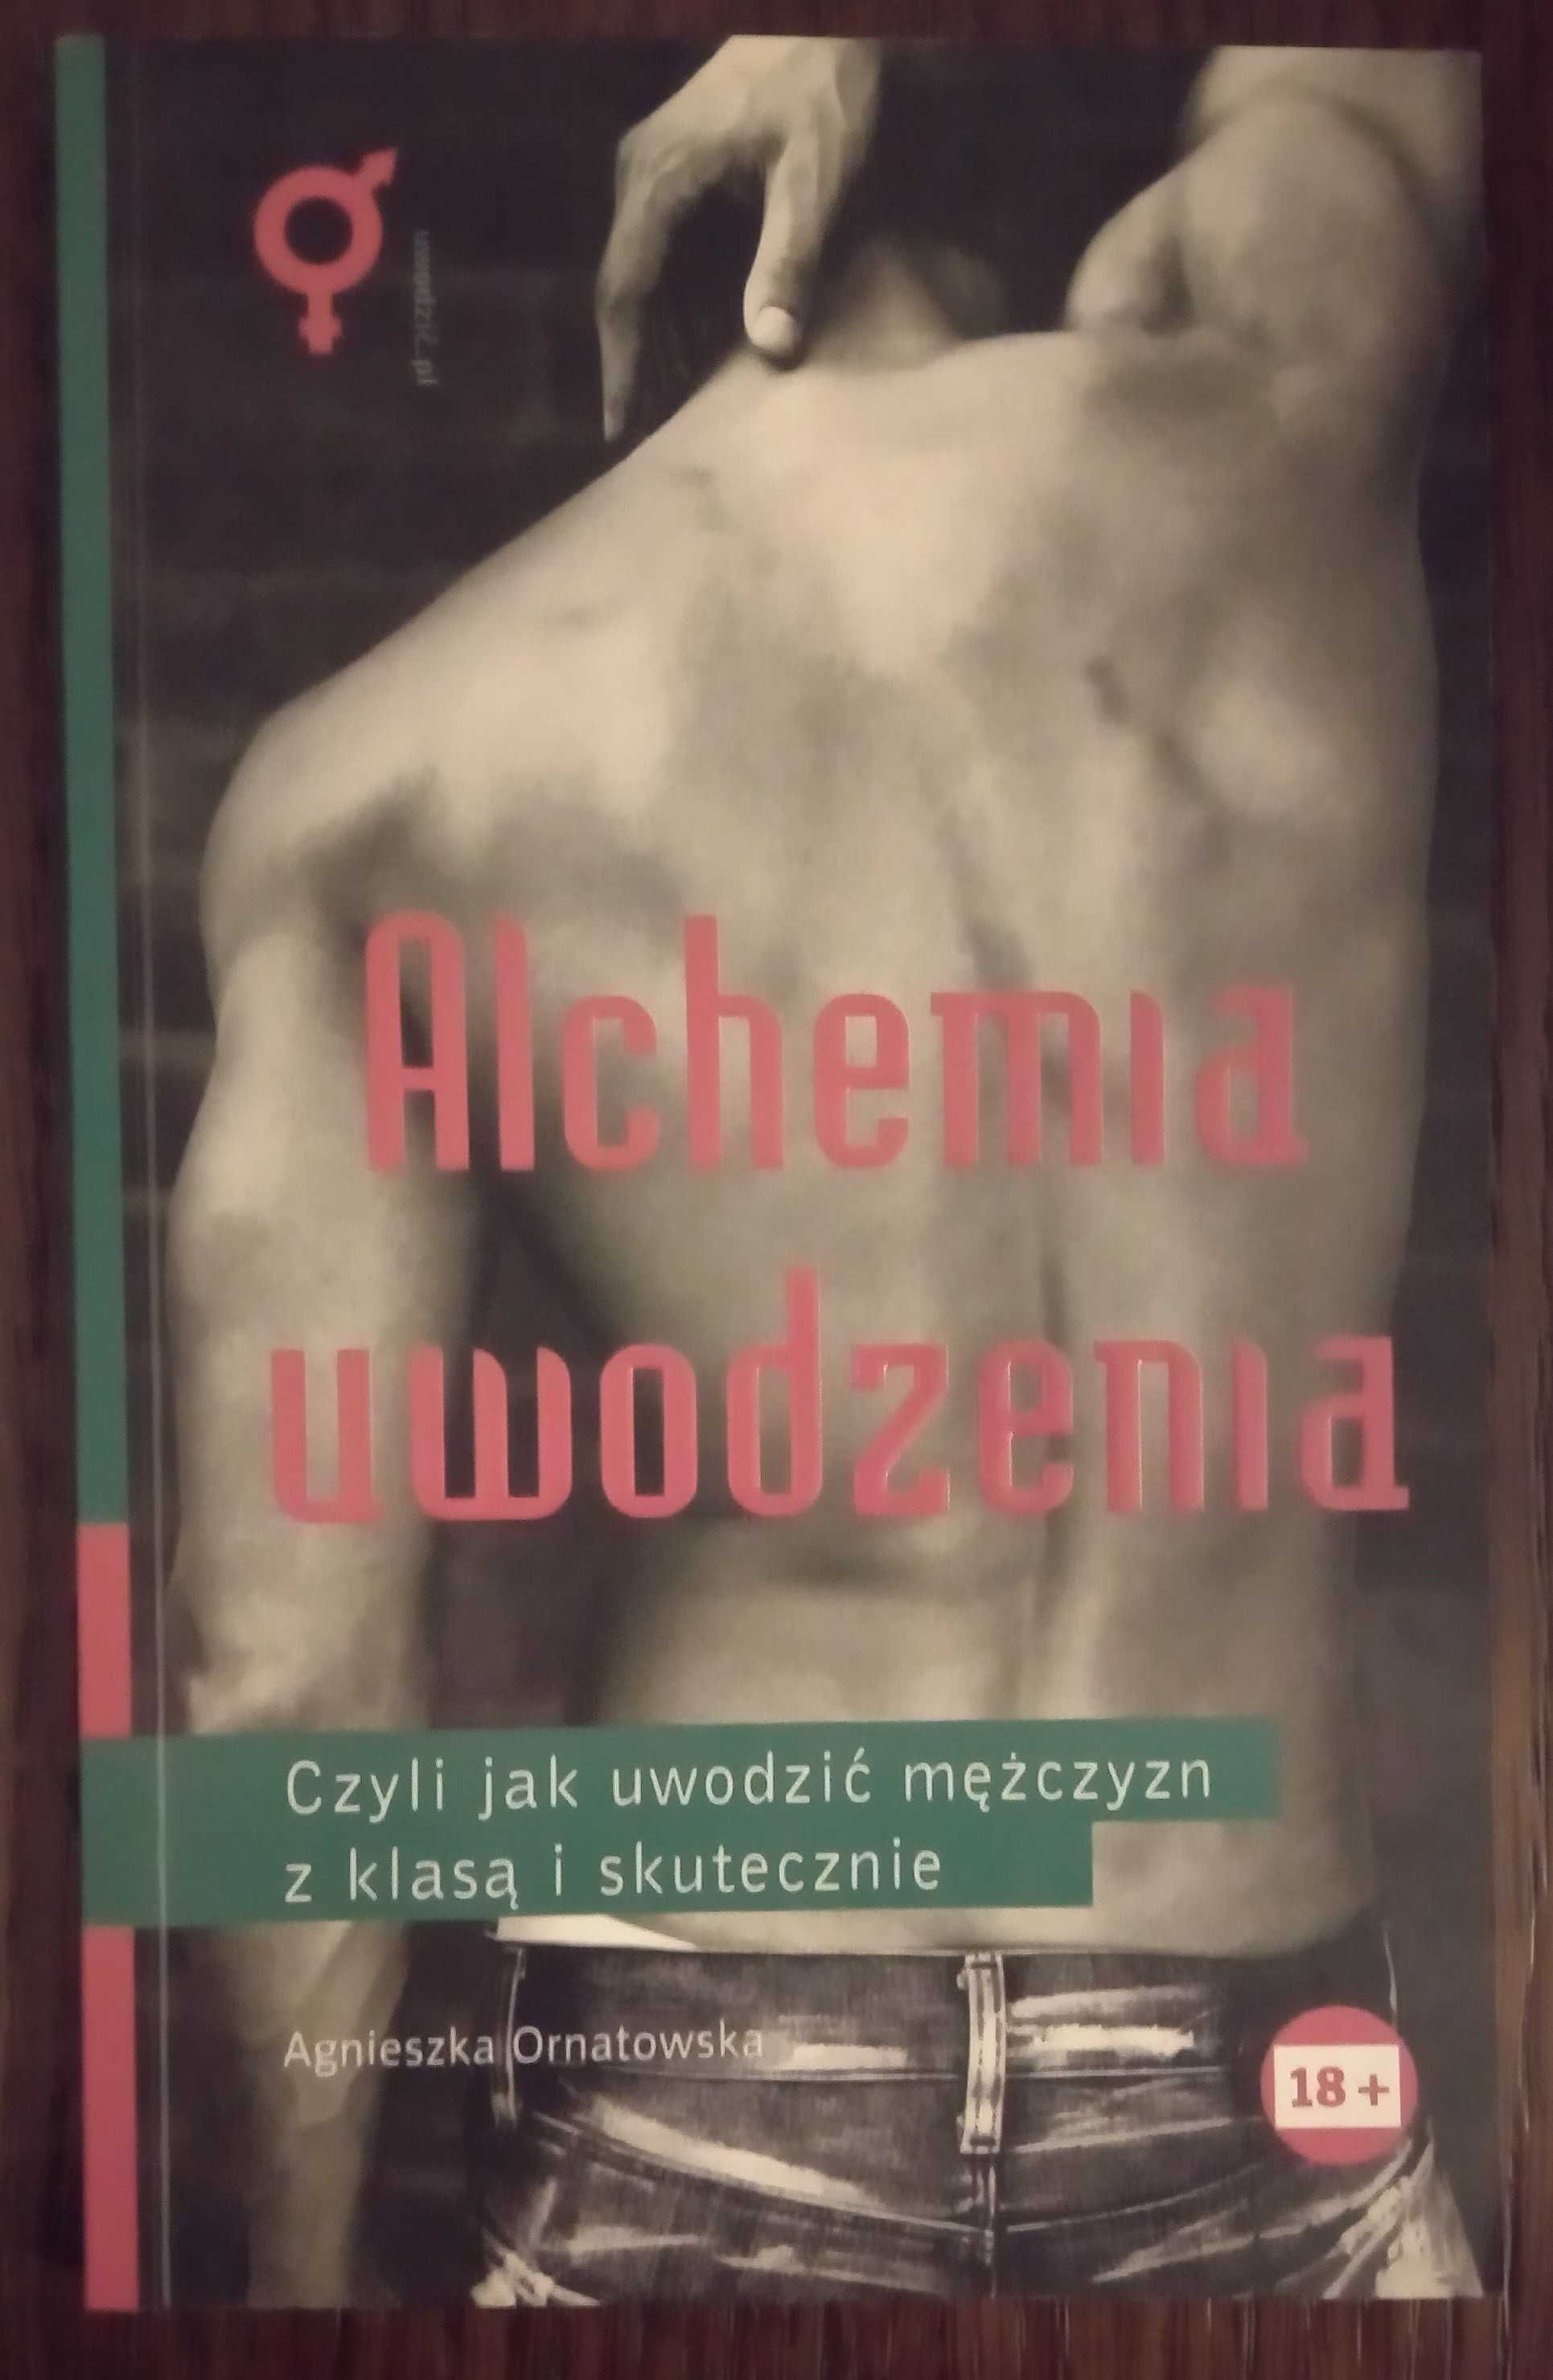 Alchemia uwodzenia - Agnieszka Ornatowska